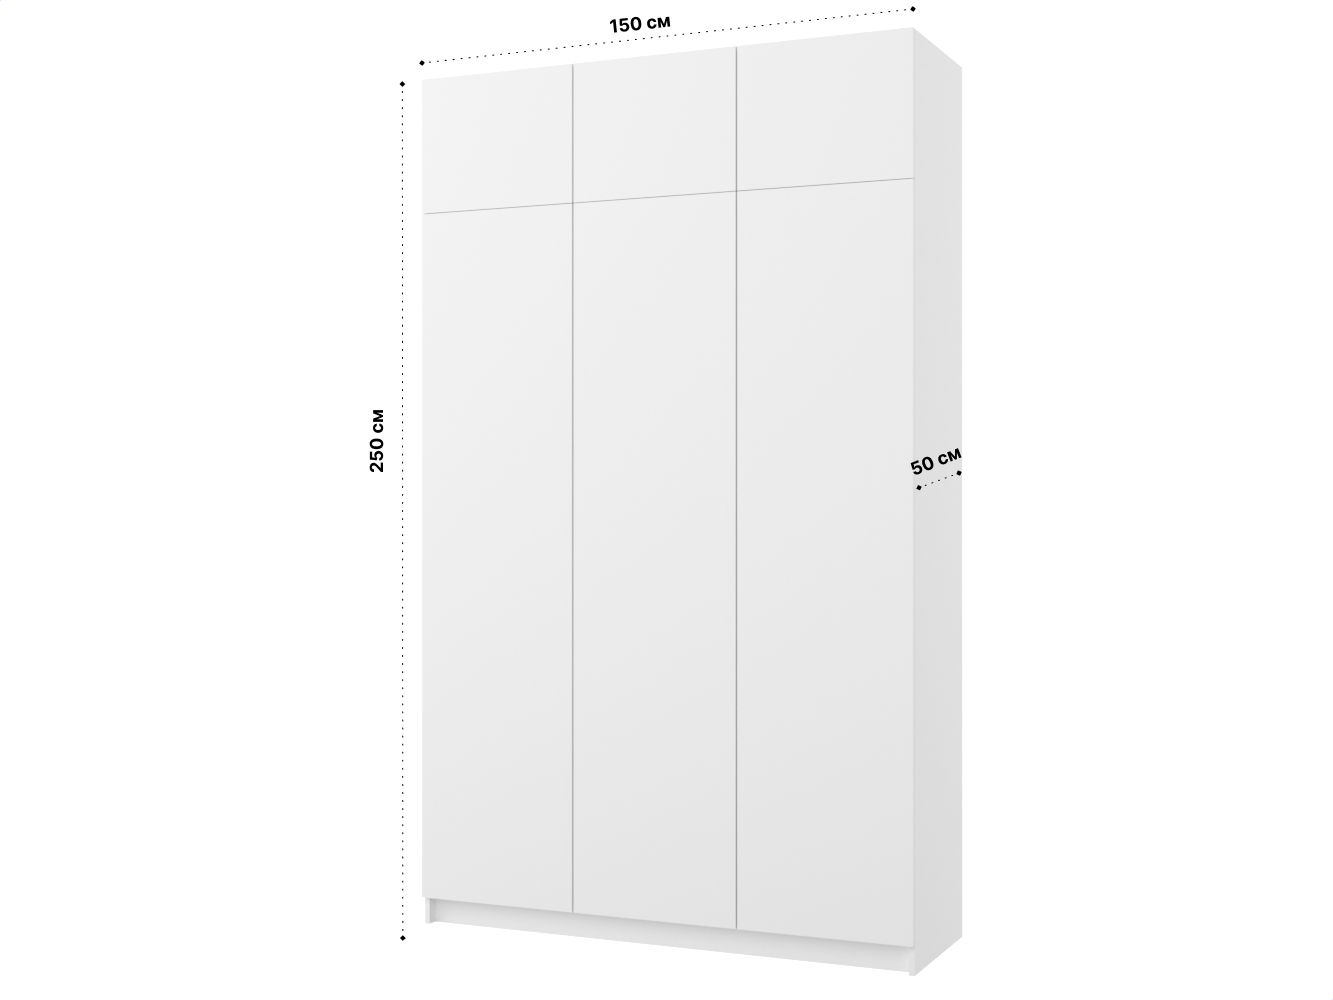 Распашной шкаф Пакс Фардал 131 white ИКЕА (IKEA) изображение товара